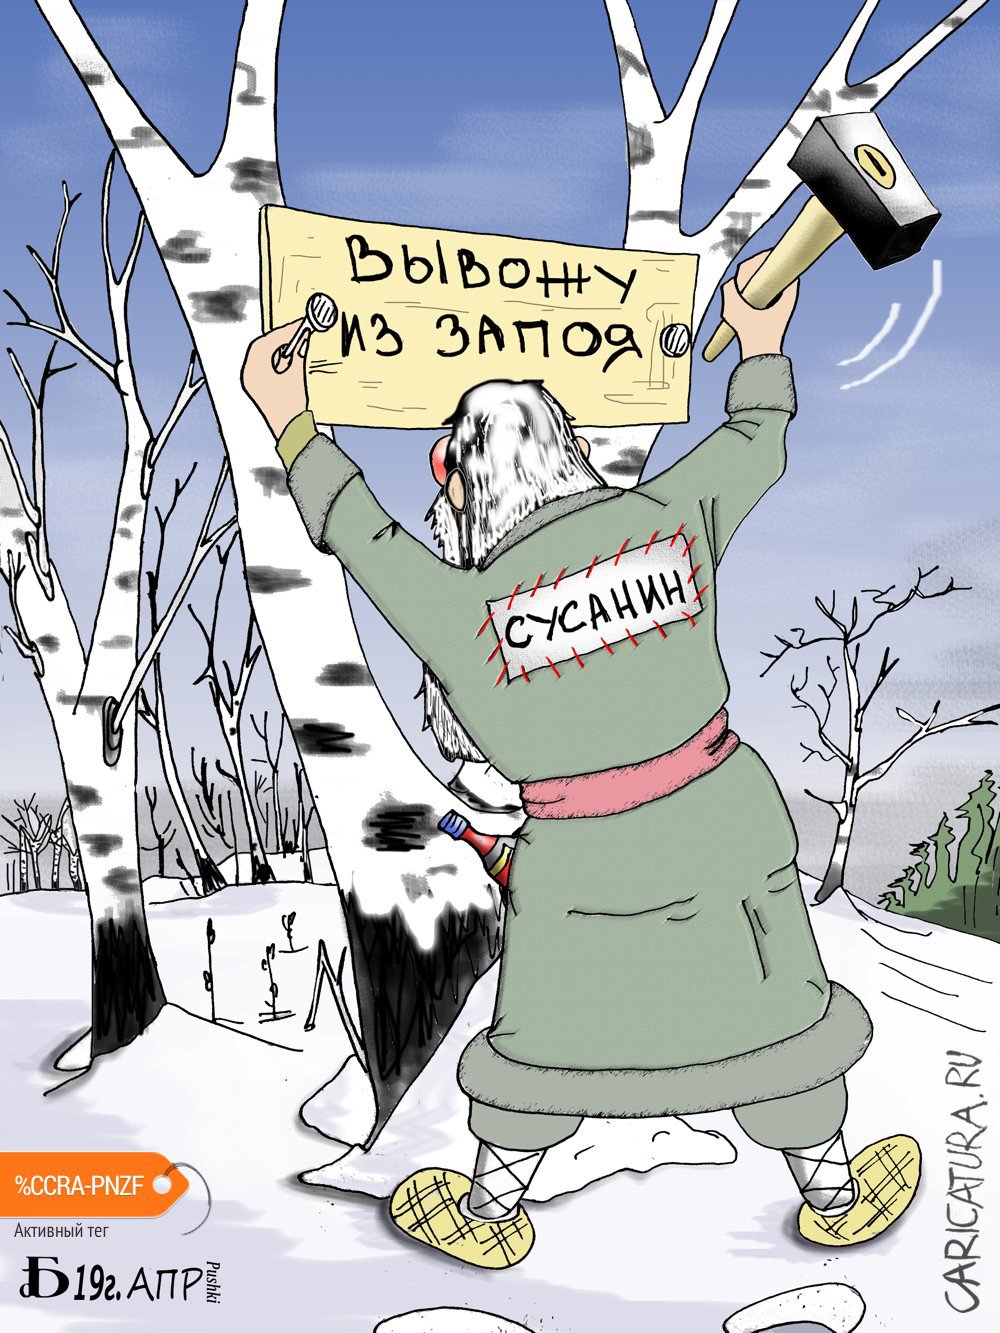 Карикатура "Про верную дорогу", Борис Демин